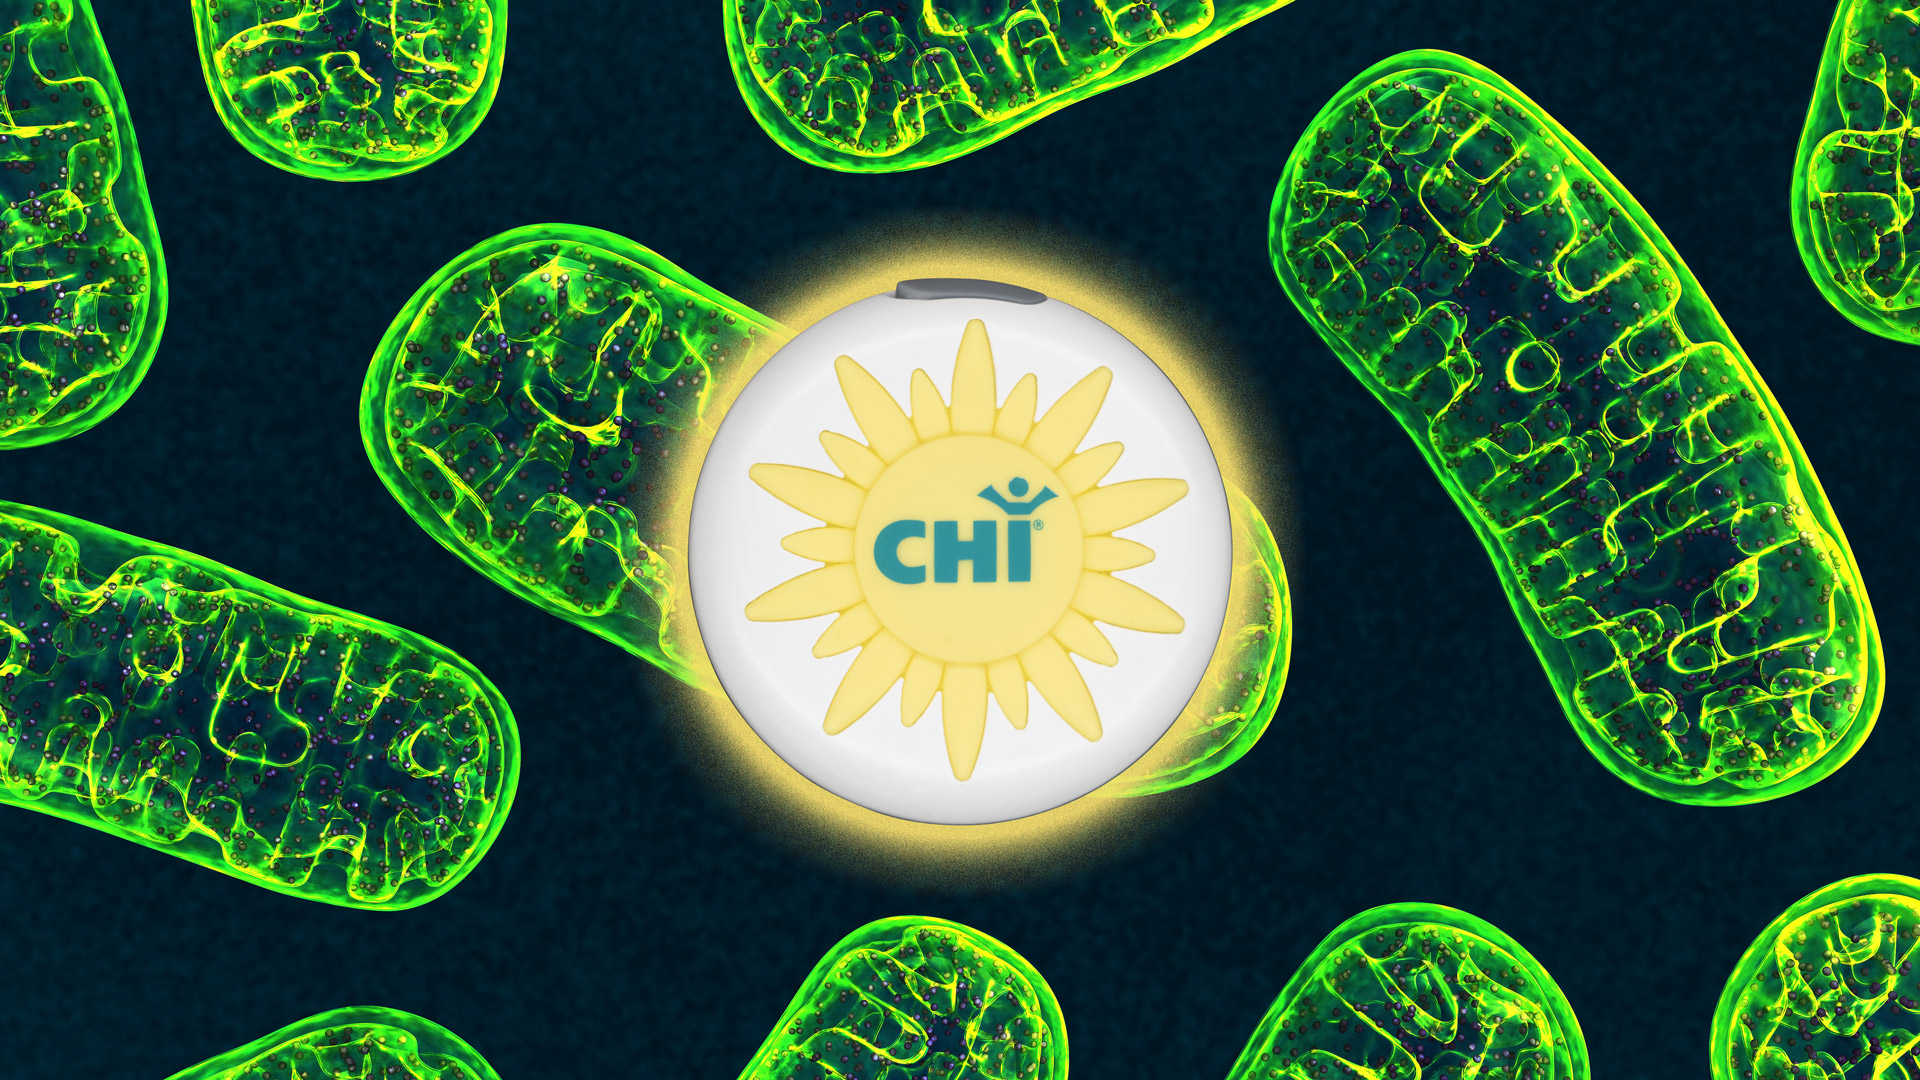 CHI Sol y Mitocondrias